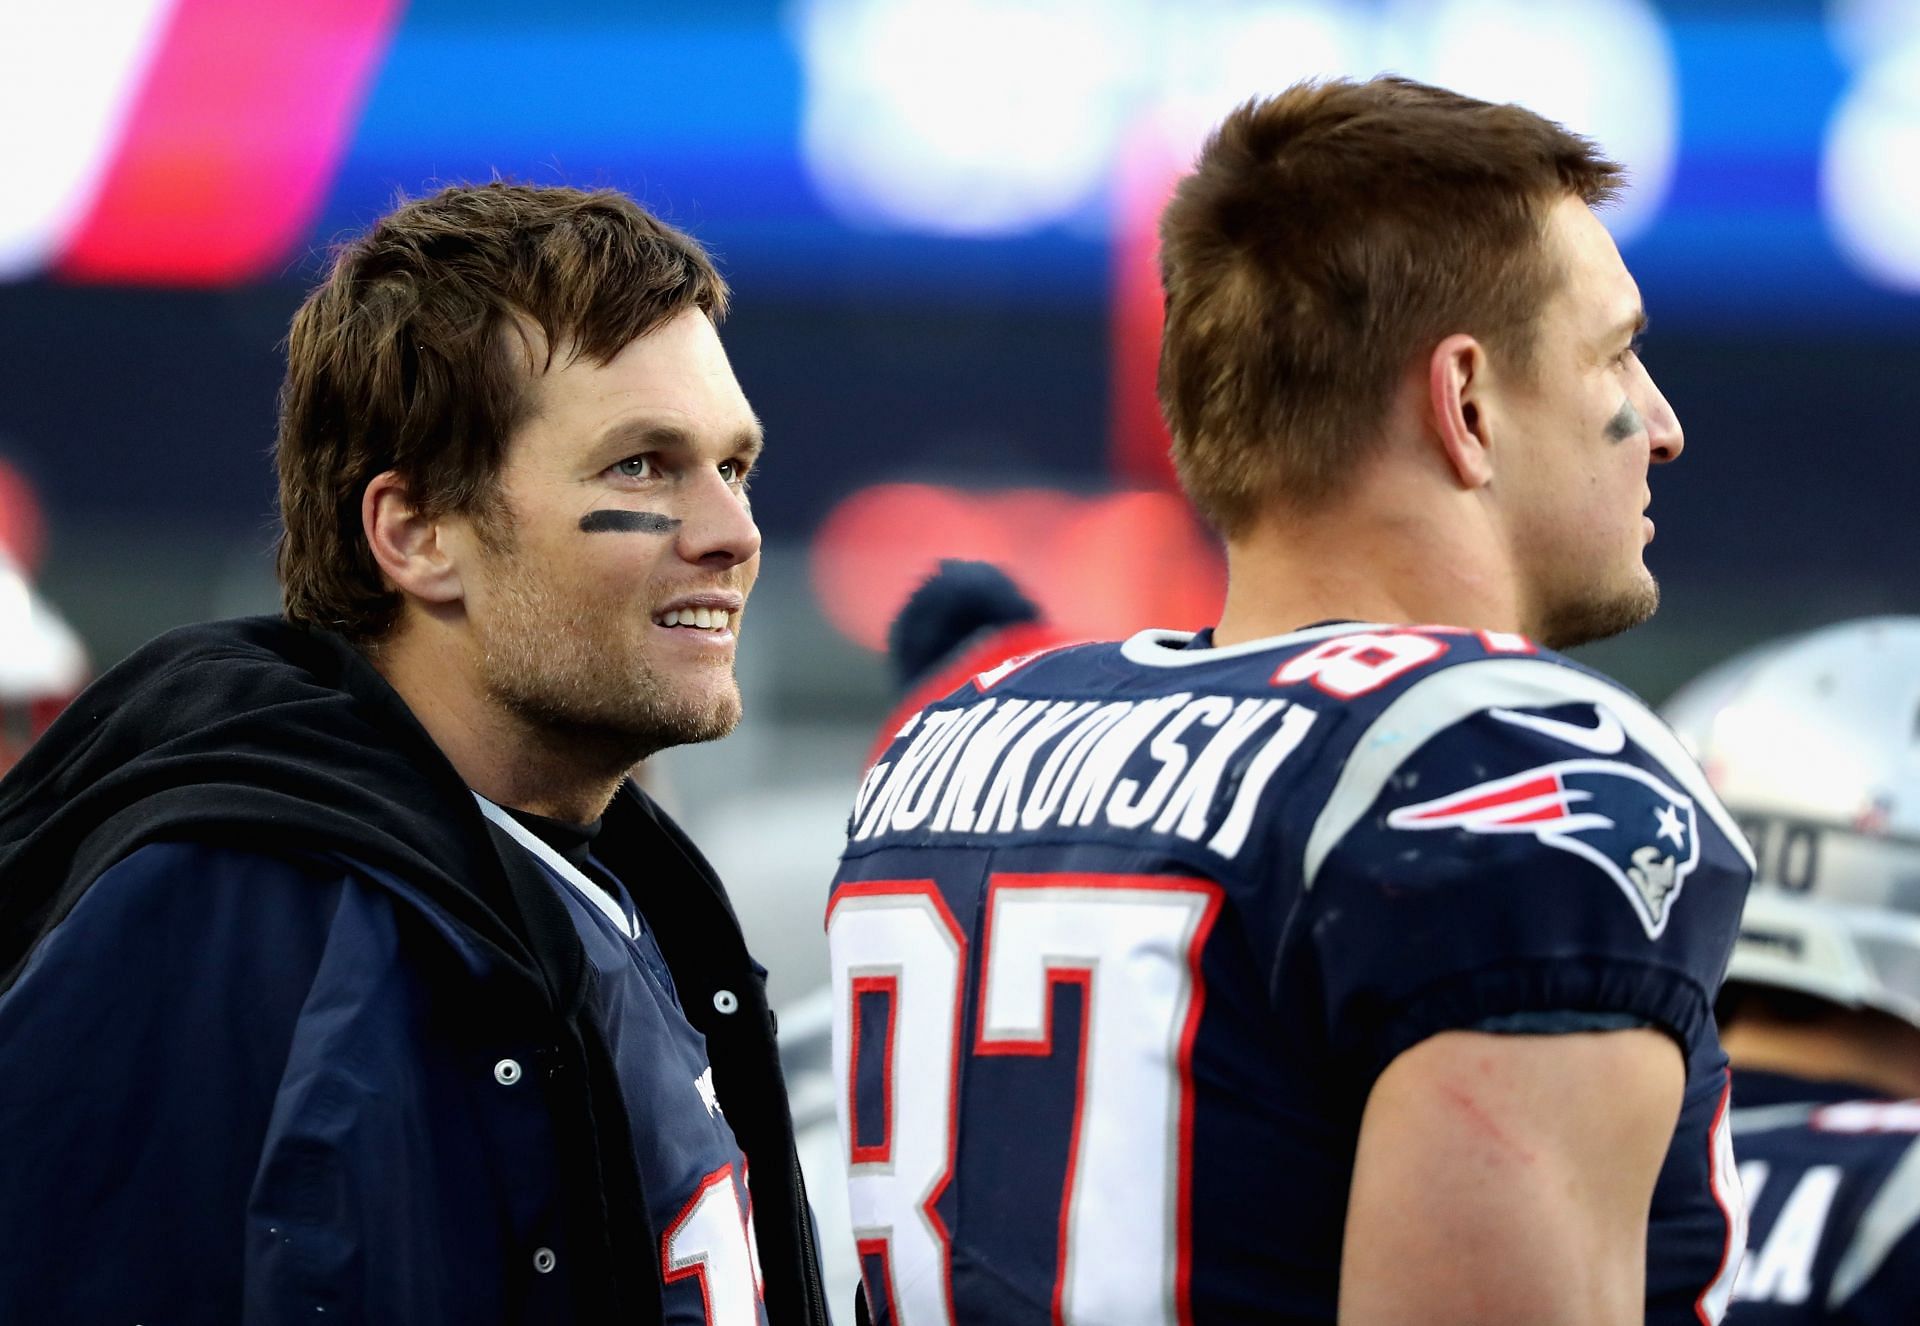 When Rob Gronkowski threw haymakers to protect Tom Brady - “Screw it”